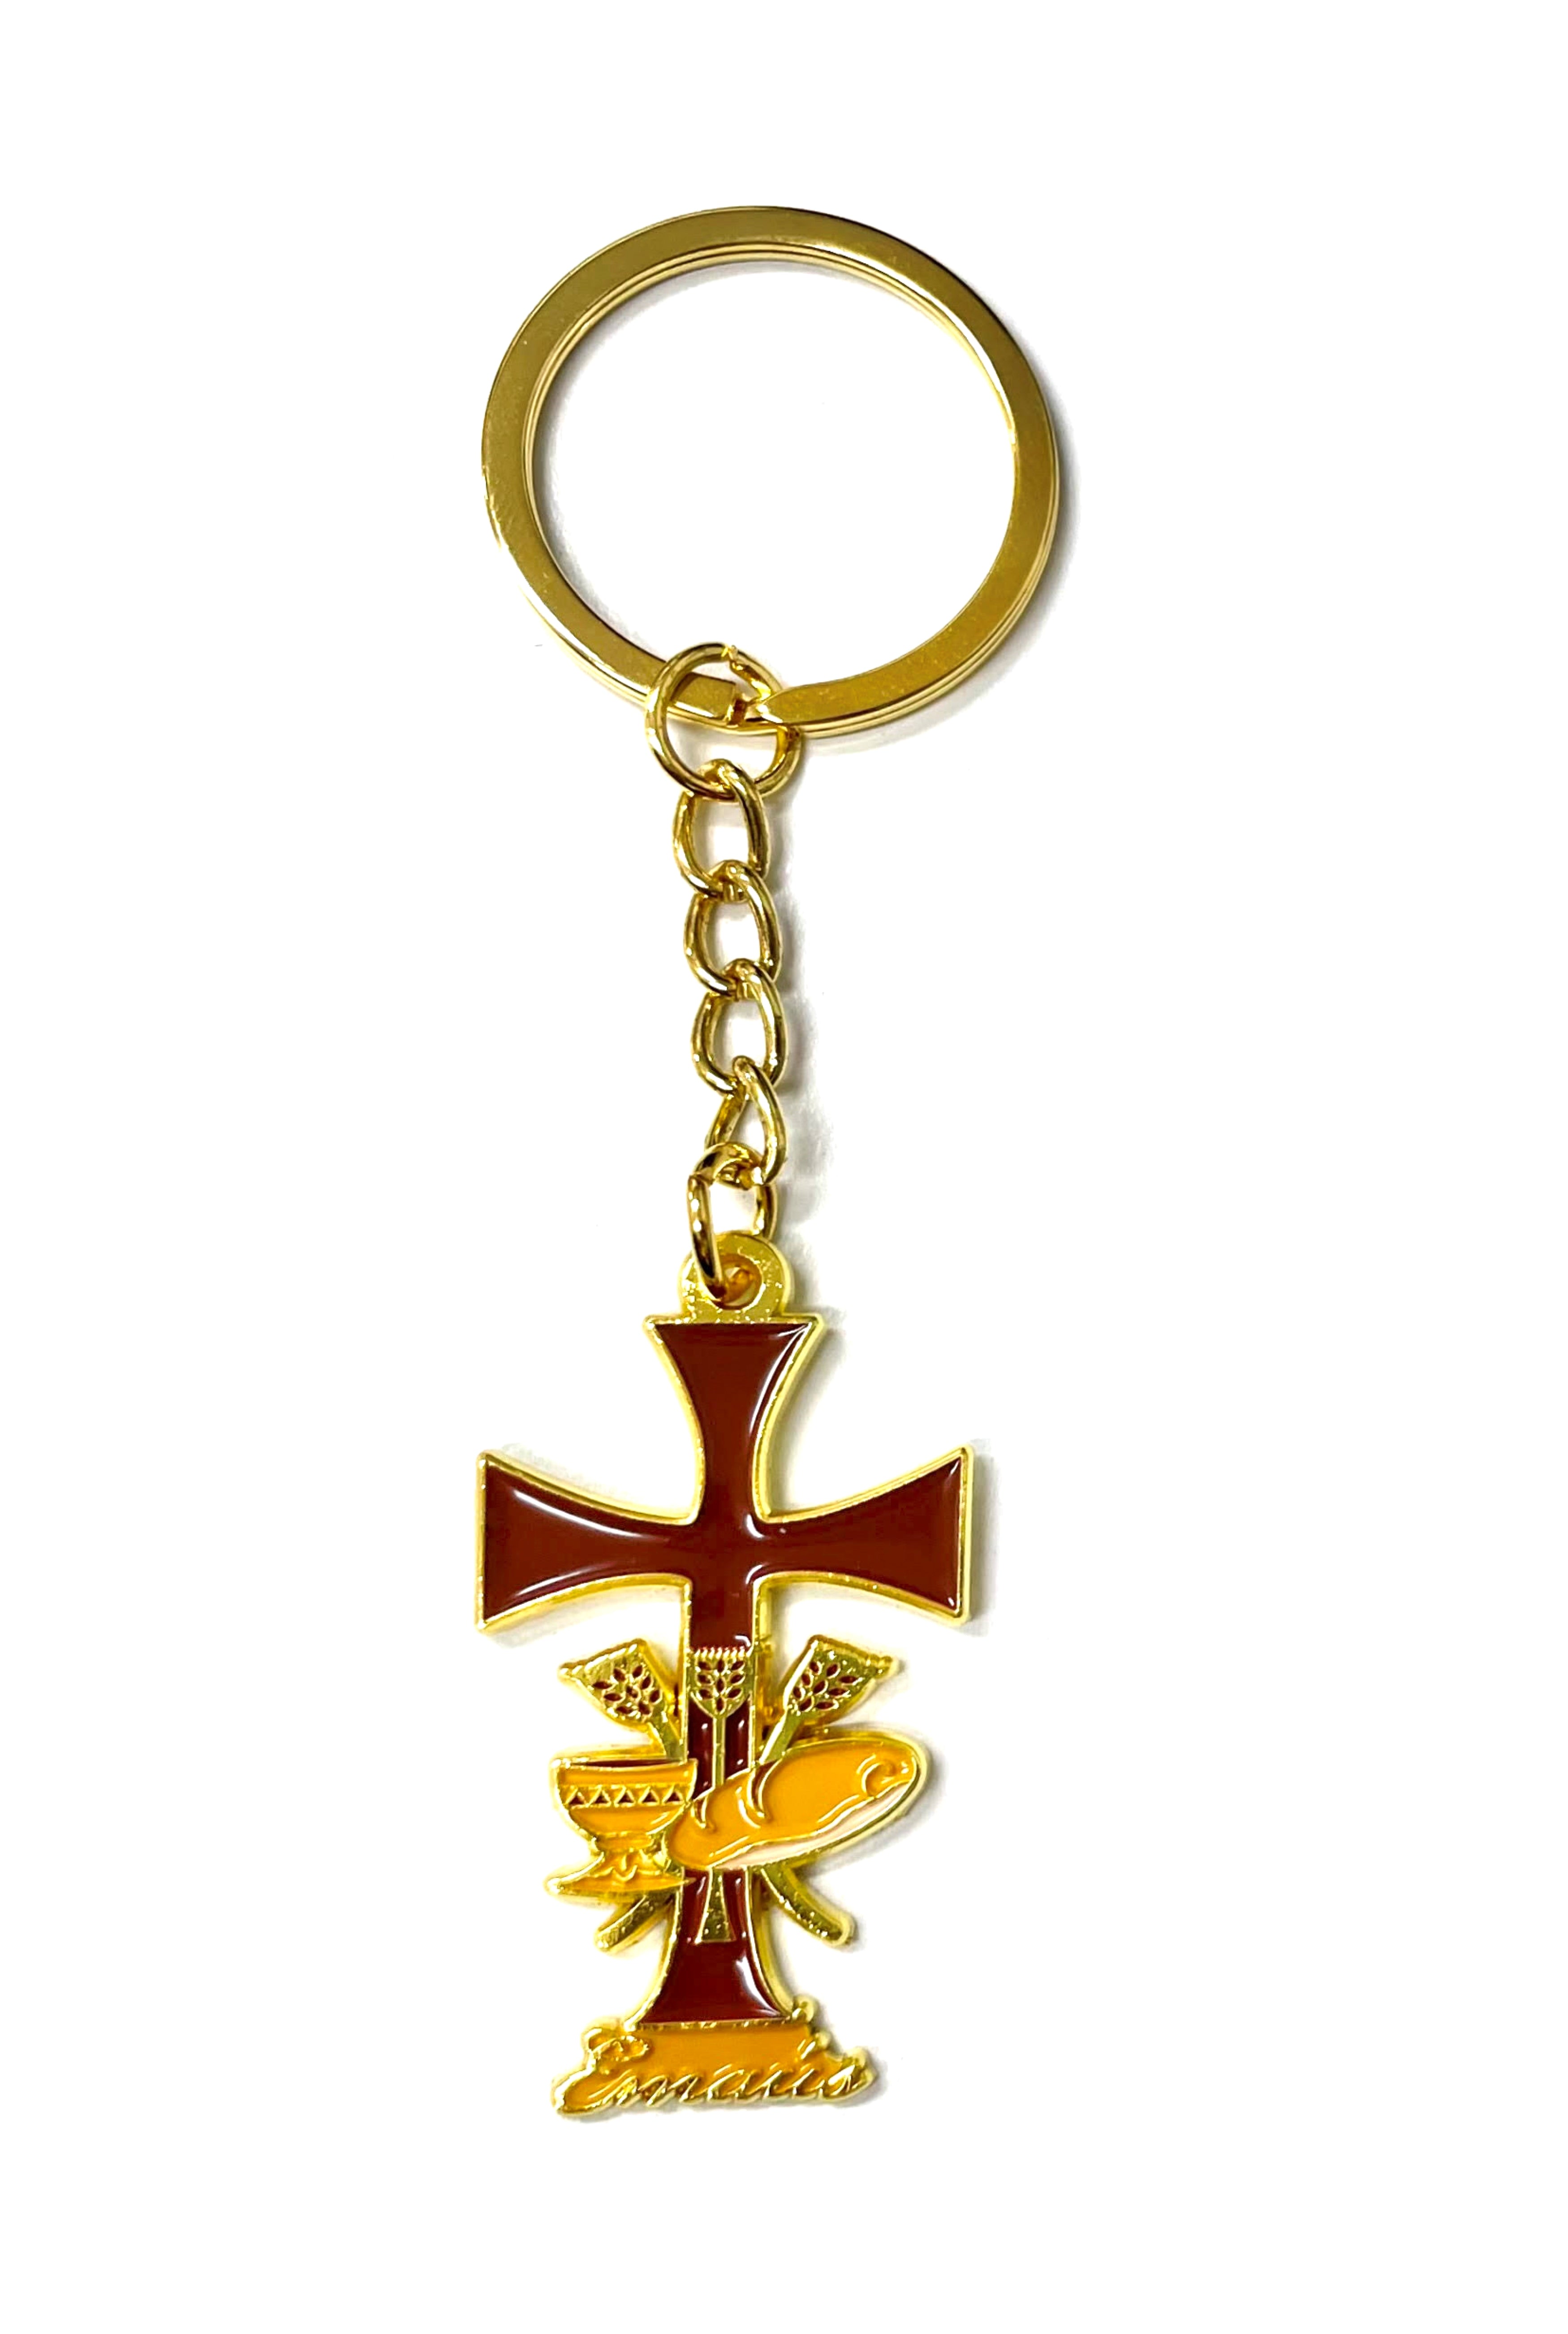 Emmaus brown keychain special for retreats made of golden metal - Llavero de Emaús marrón, especial para retiros hecho en metal dorado